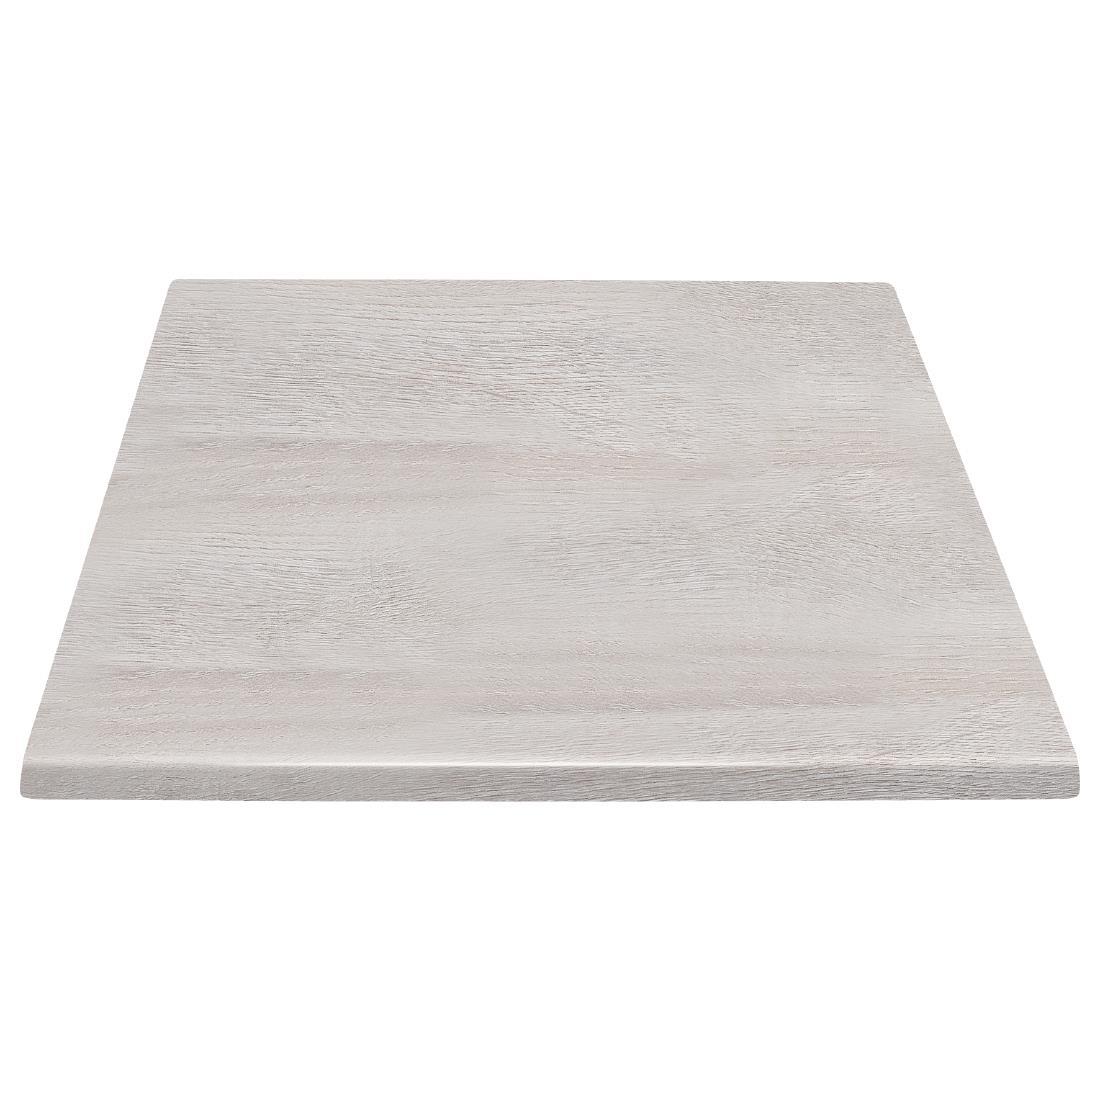 Bolero Pre-drilled Square Table Top Whitewash 700mm - HC291  - 1